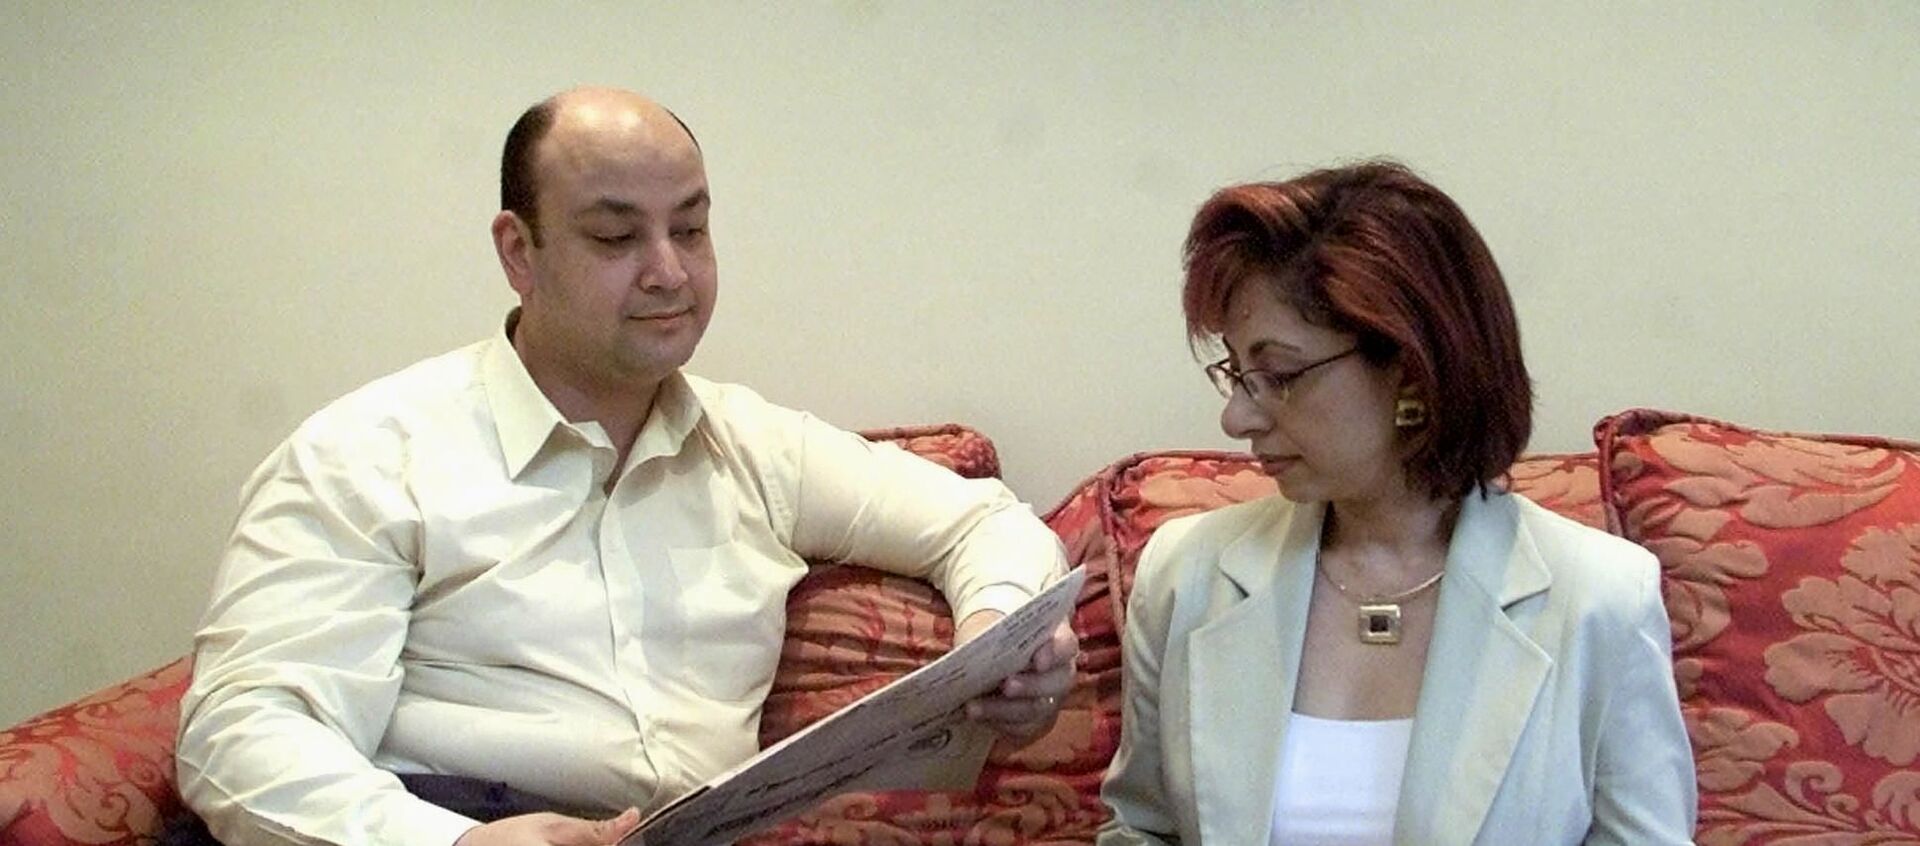 الإعلامي المصري، عمرو أديب مع زوجته الإعلامية، لميس الحديدي، القاهرة، 14 يونيو/ حزيران 2001 - سبوتنيك عربي, 1920, 18.02.2021